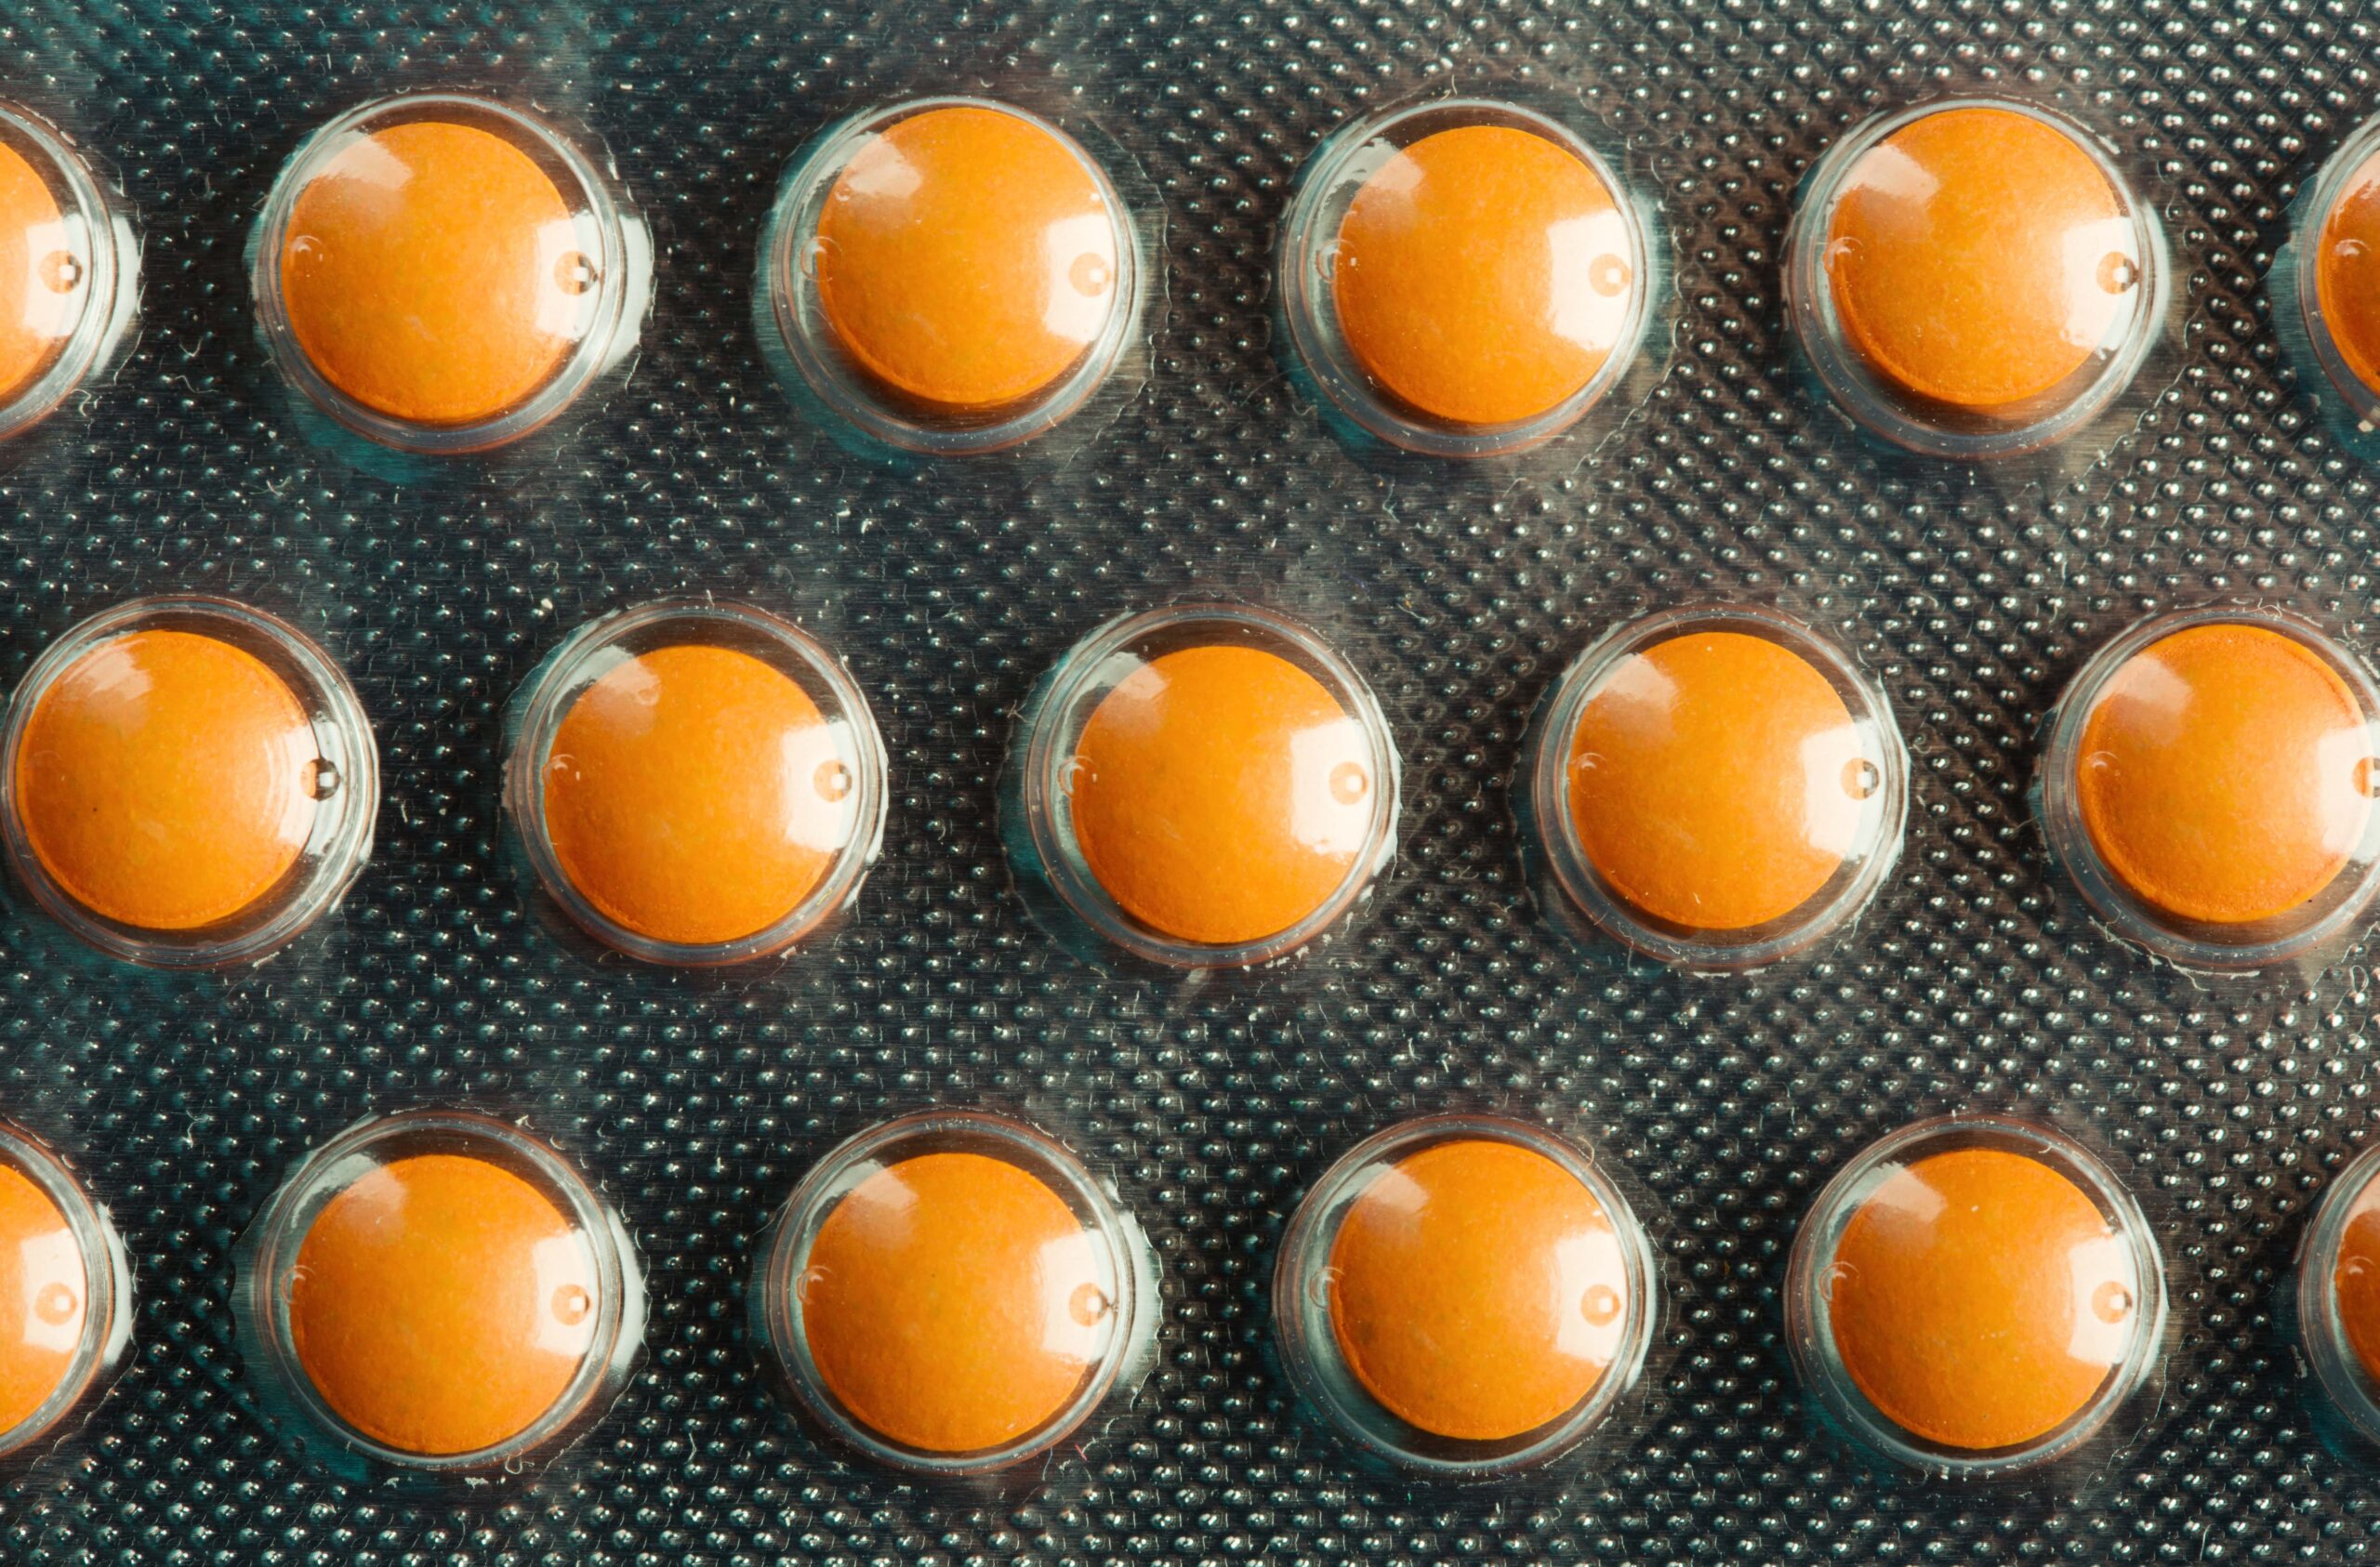 oral contraceptive pills